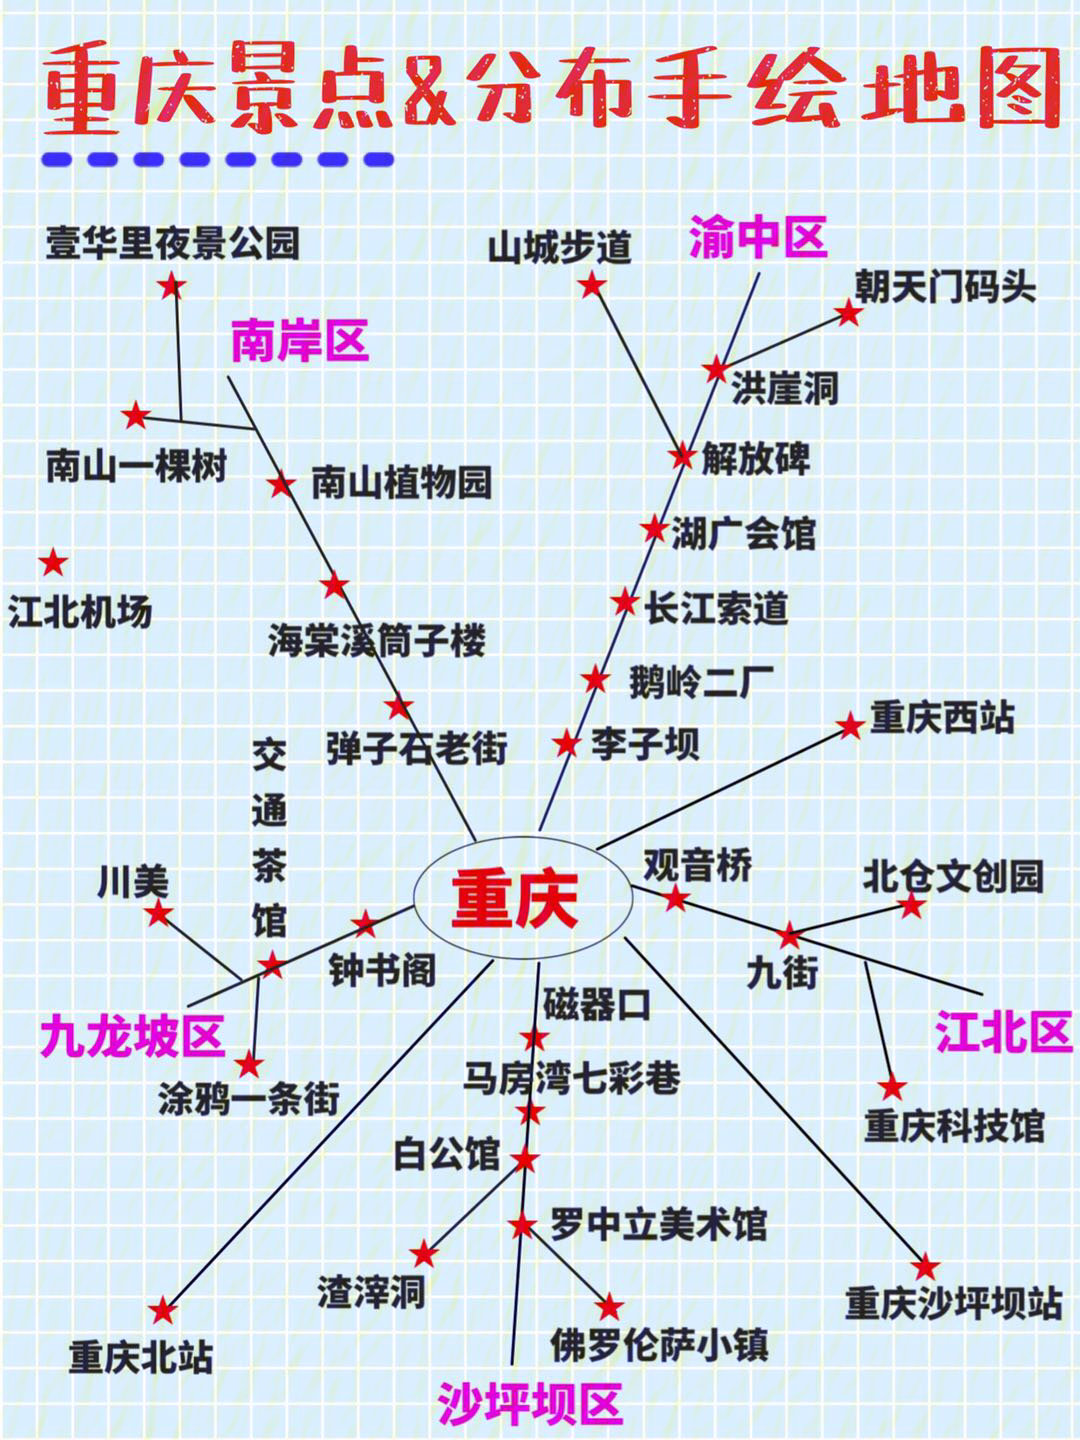 重庆所有景点攻略地图图片